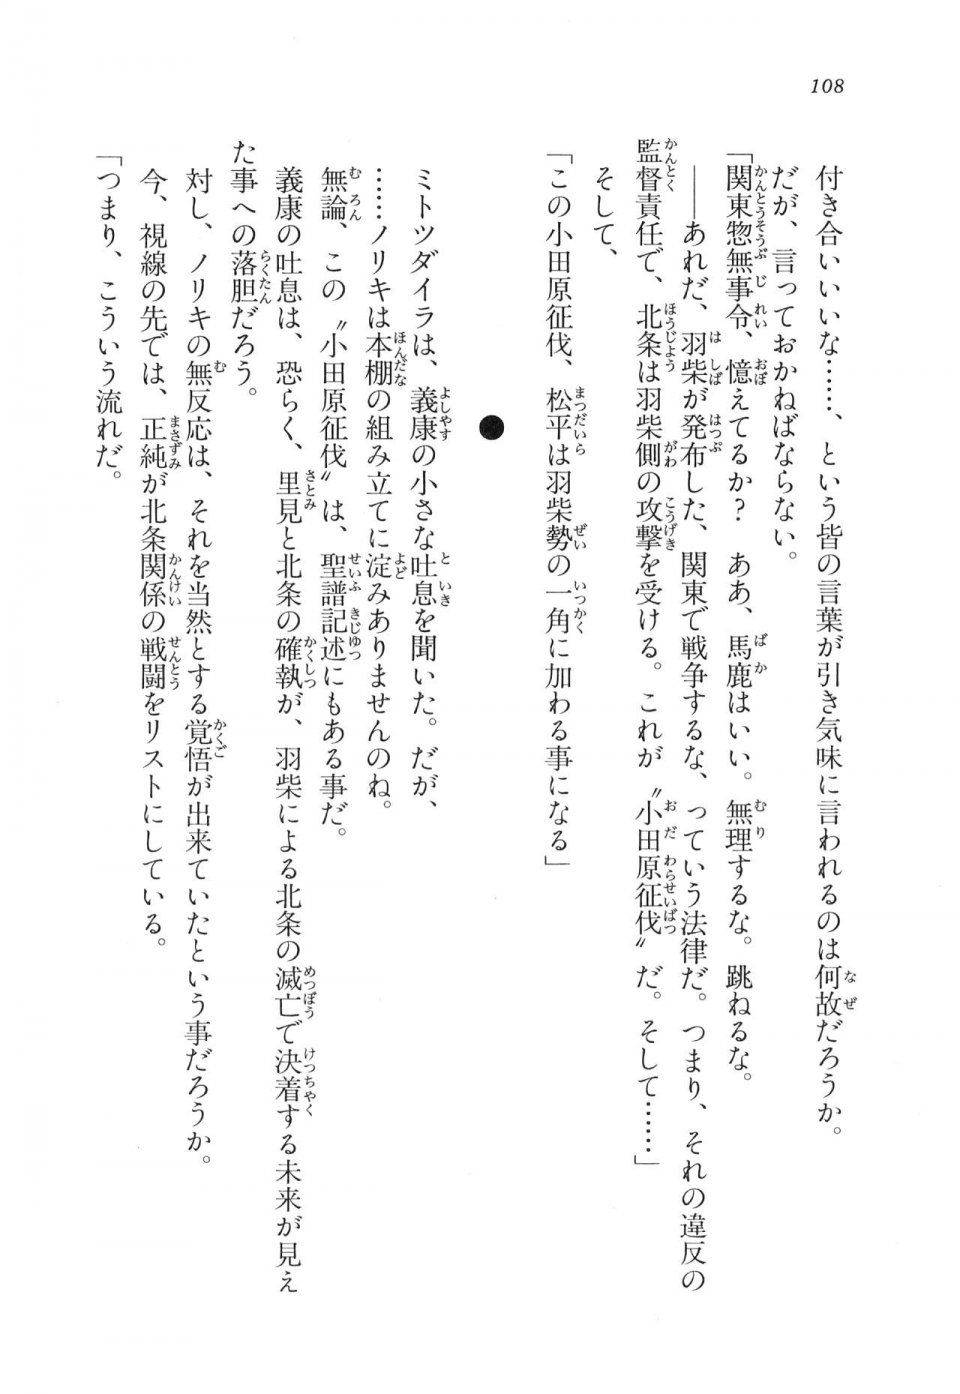 Kyoukai Senjou no Horizon LN Vol 11(5A) - Photo #108